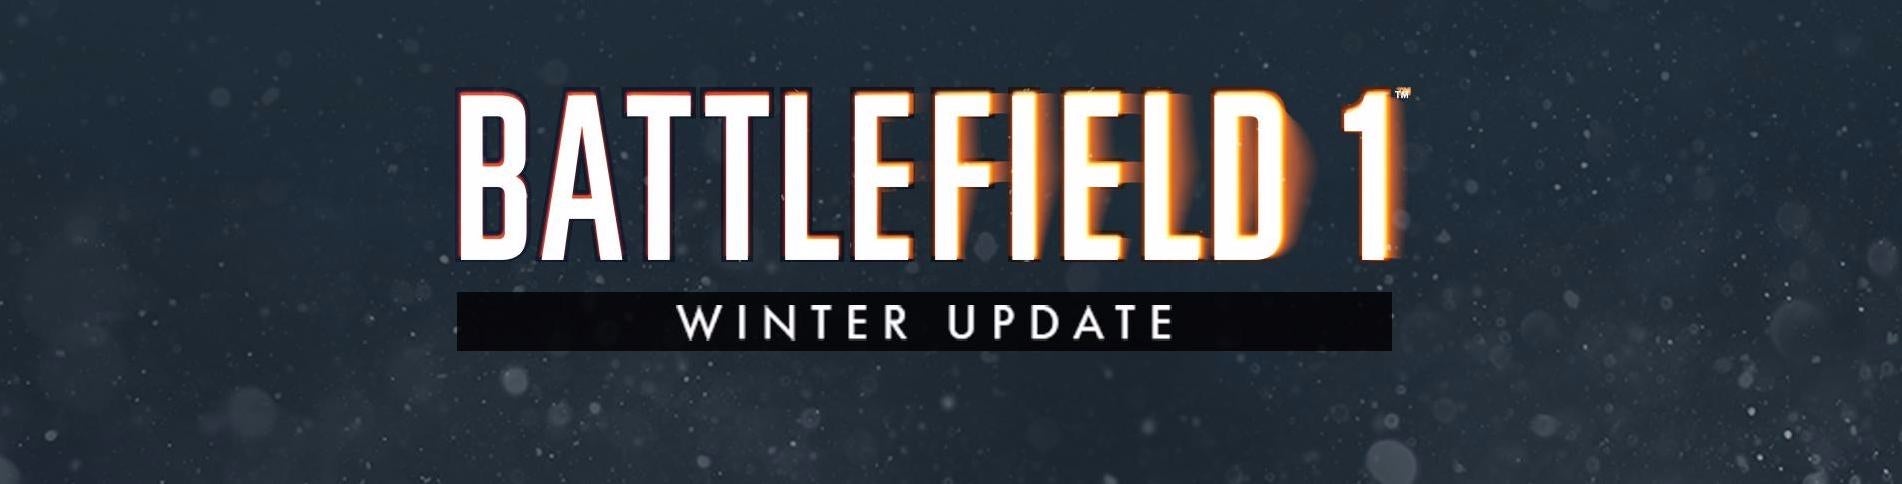 Image for Battlefield 1 dostal velkou zimní aktualizaci